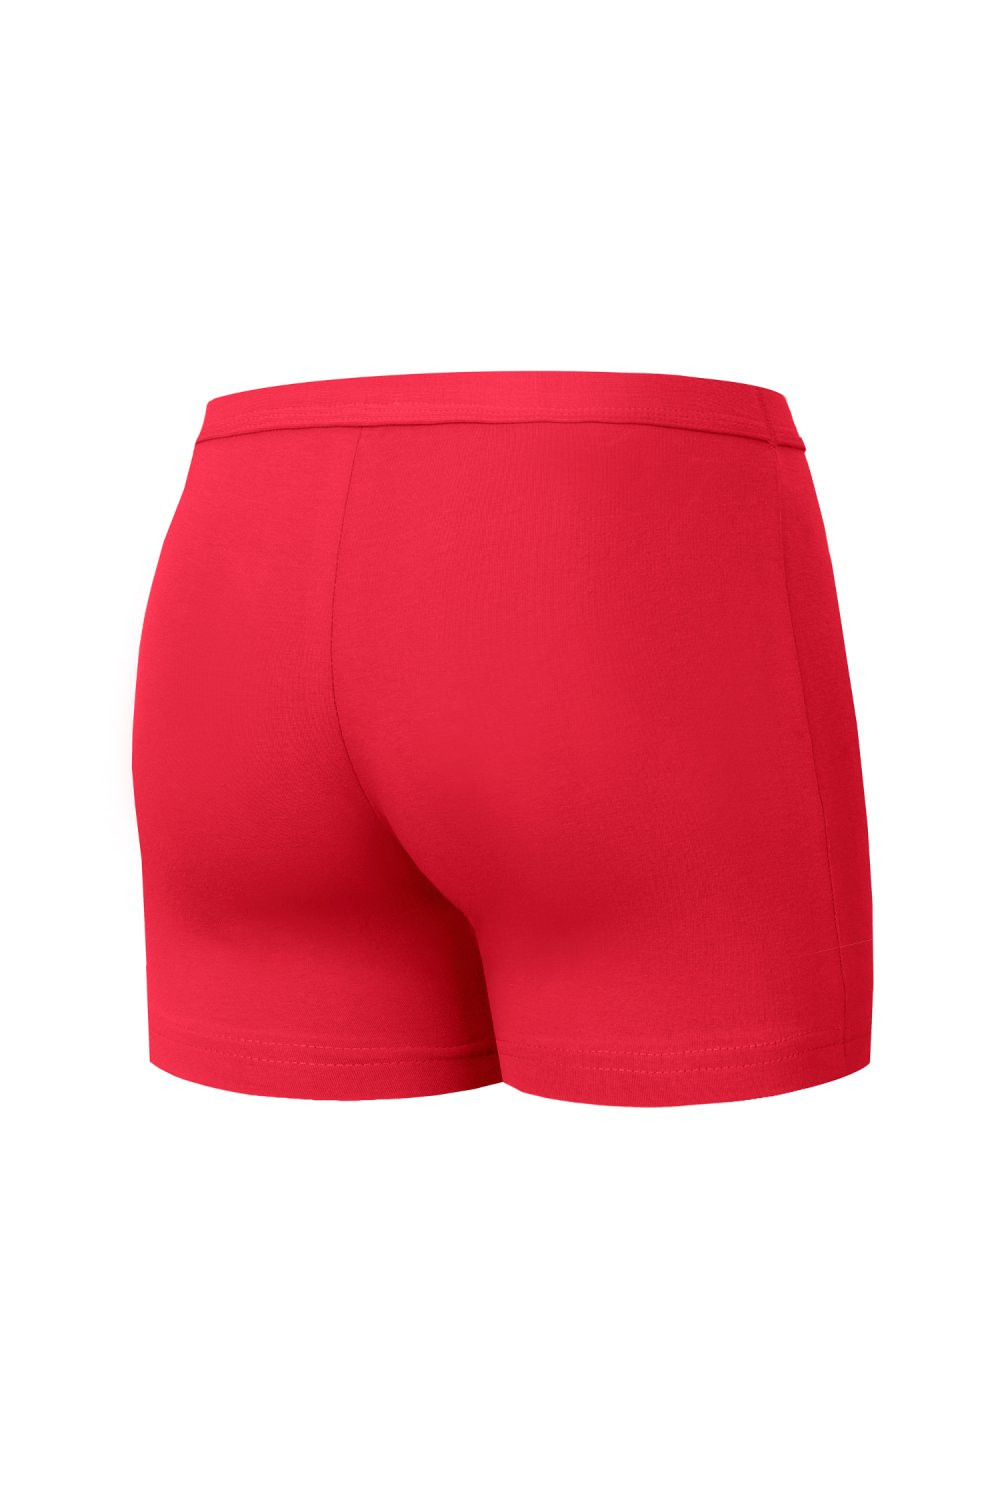 Pánské boxerky 220 red - CORNETTE Barva: Červená, Velikost: L